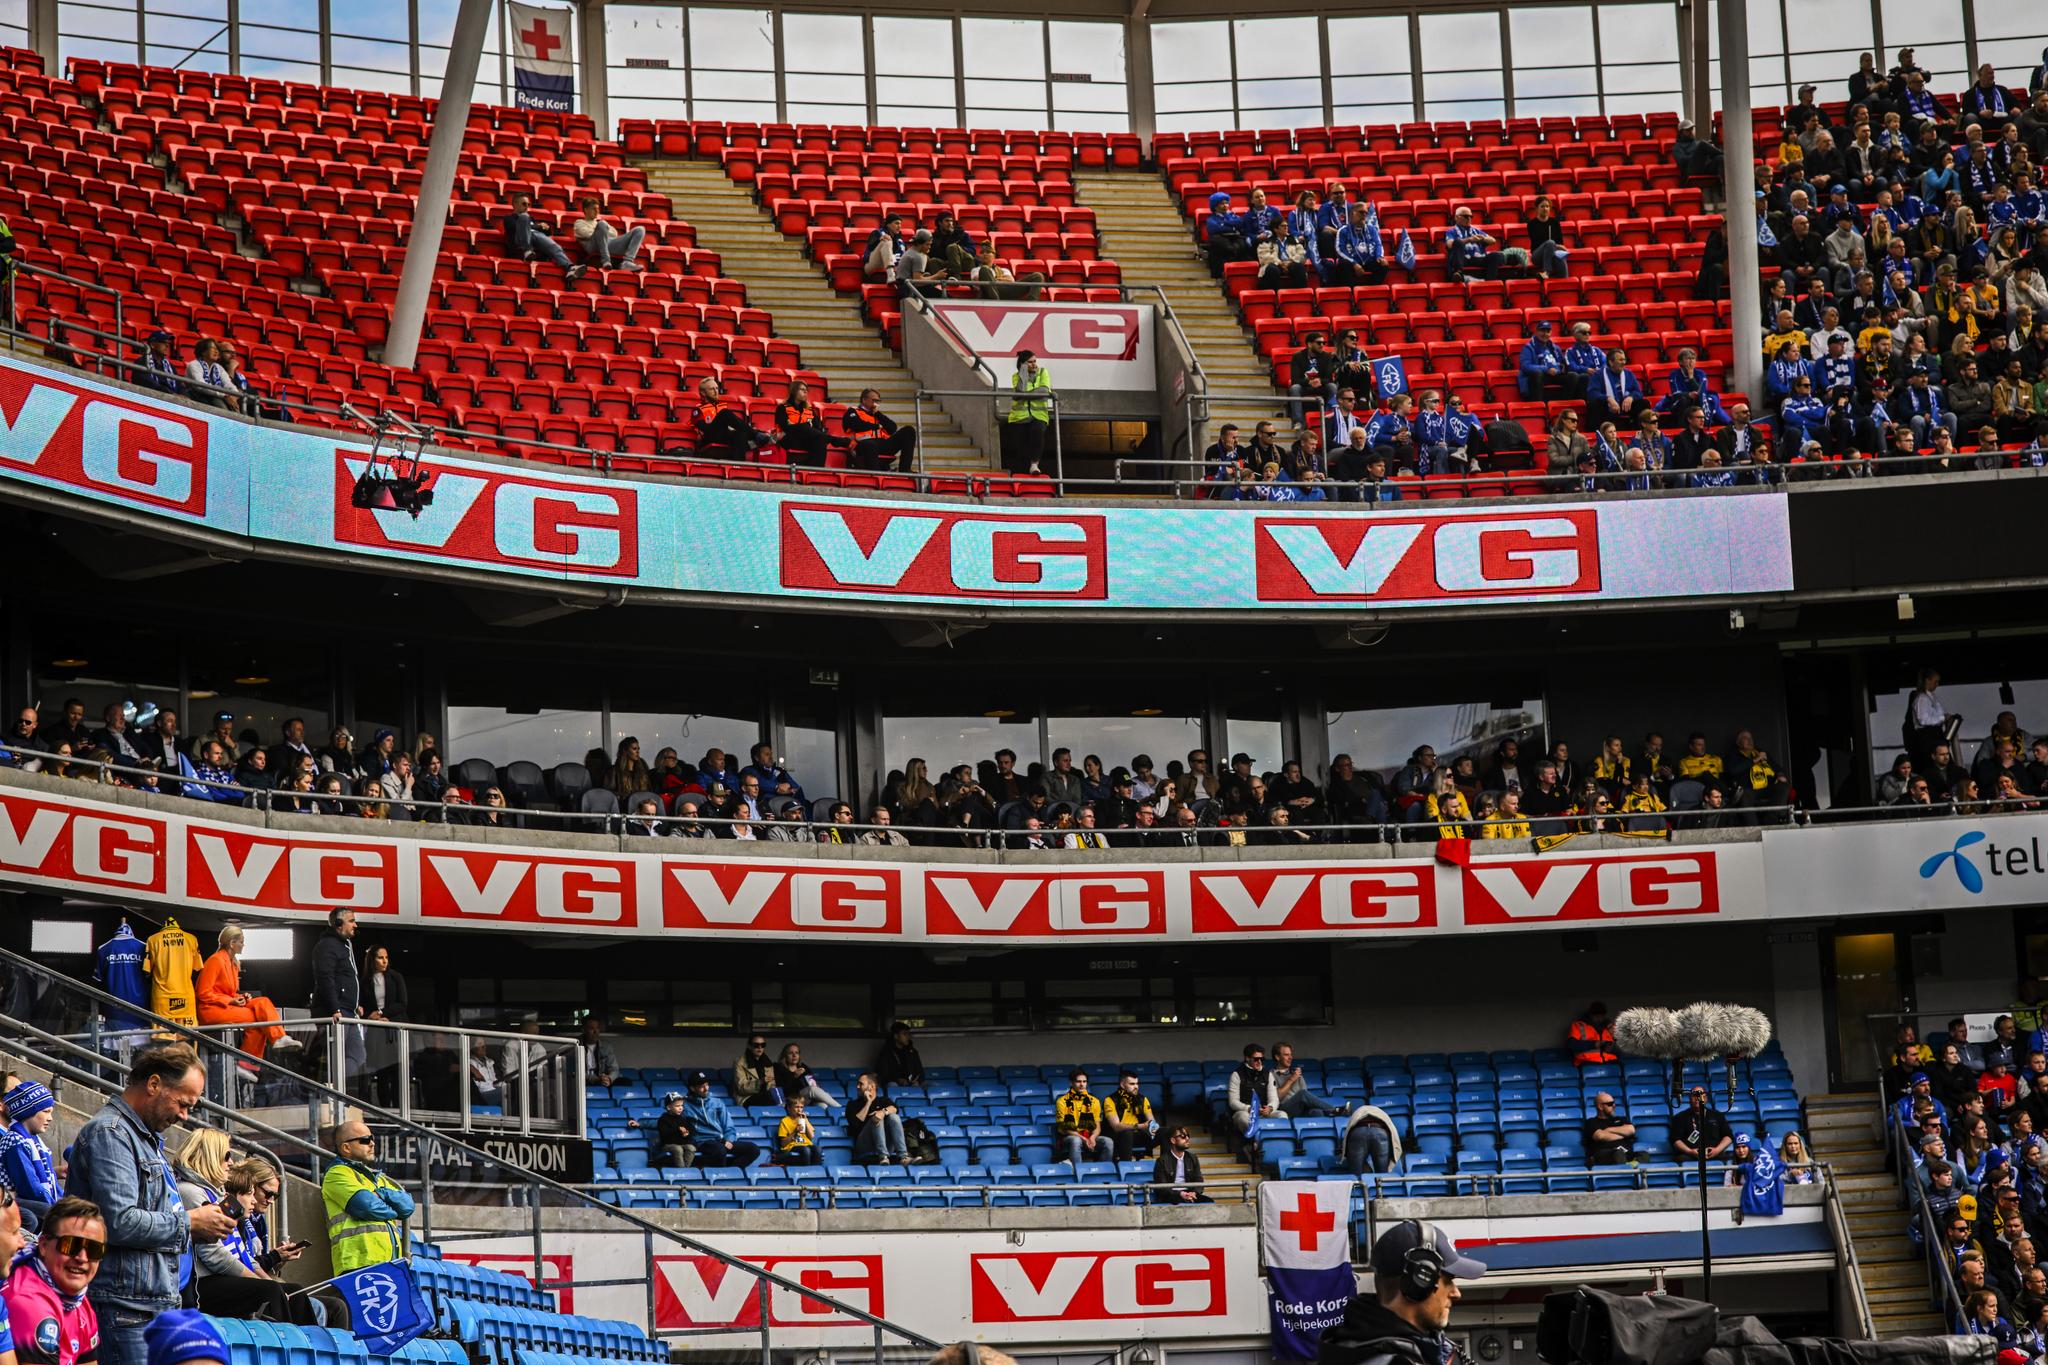 DÅRLIG OPPMØTE: Man kunne se store flekker av ledige seter under cupfinalen mellom Bodø/Glimt og Molde. 